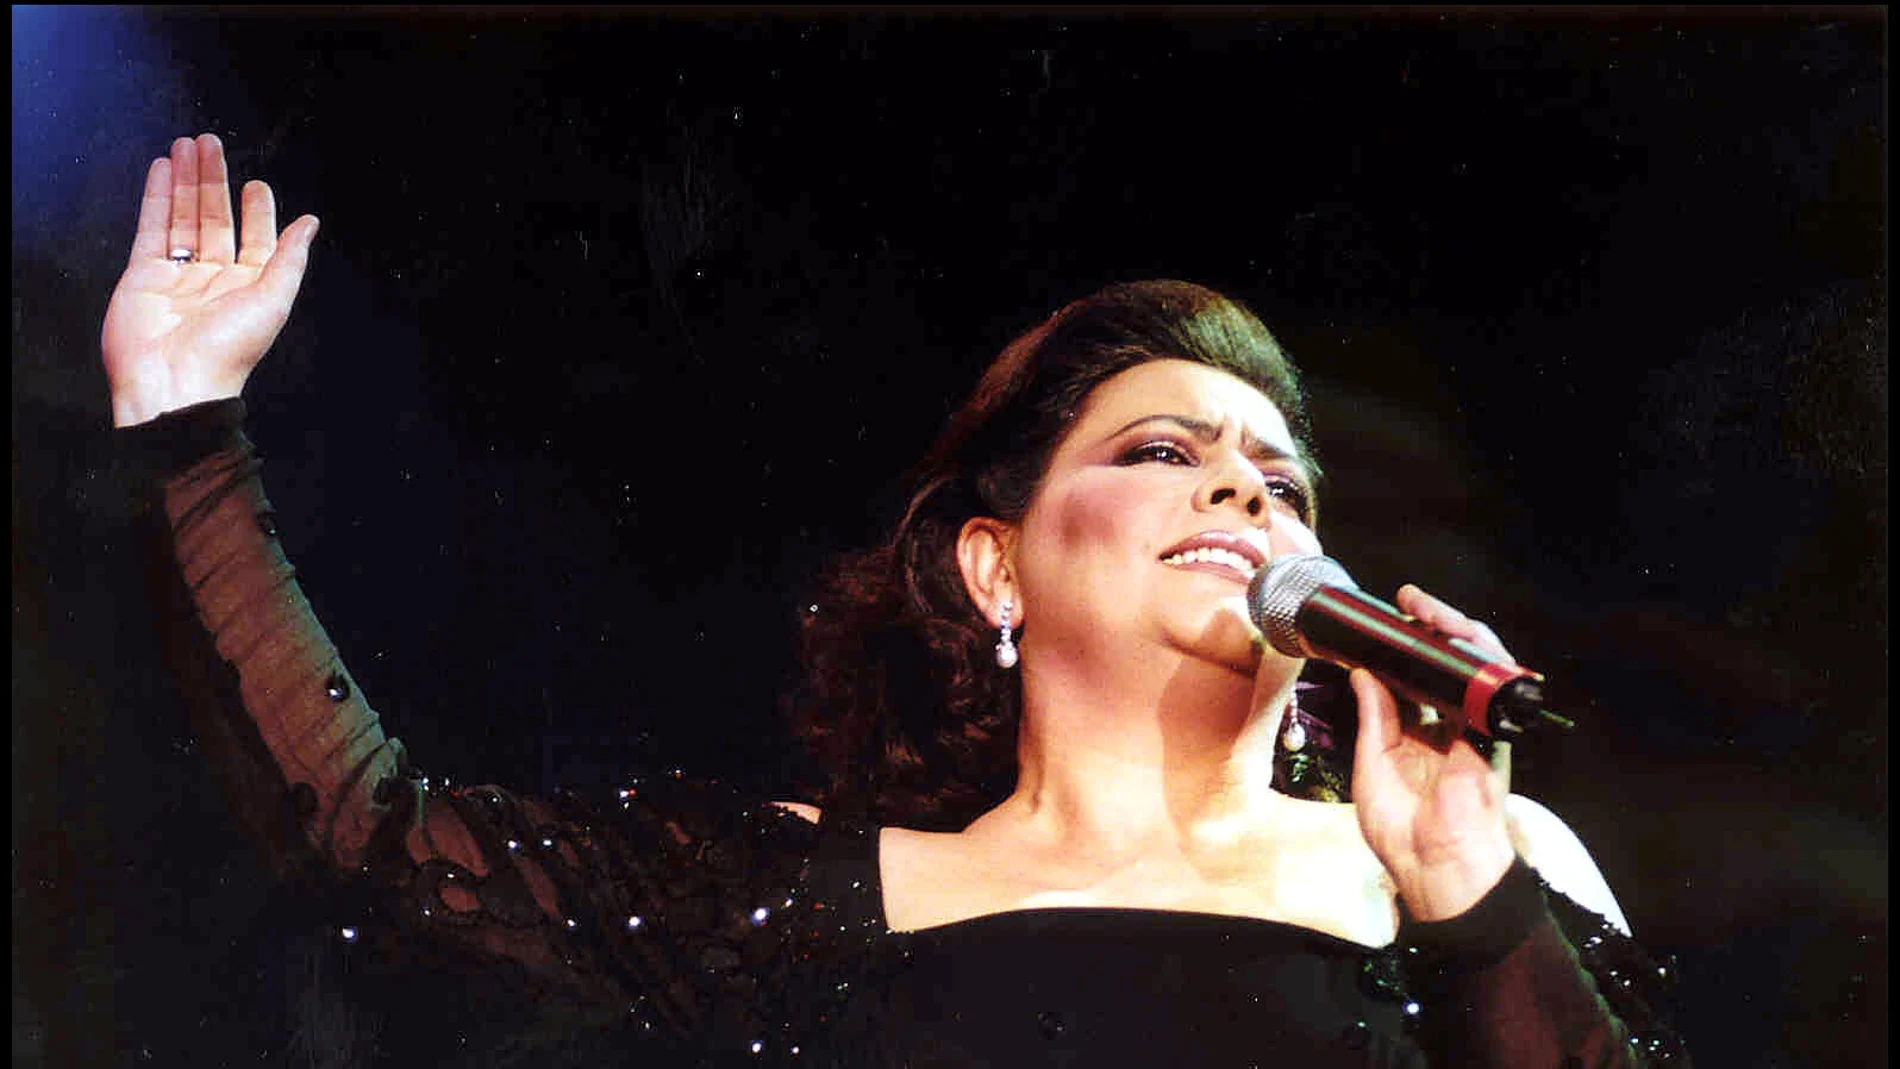 La cantante María del Monte, durante un concierto